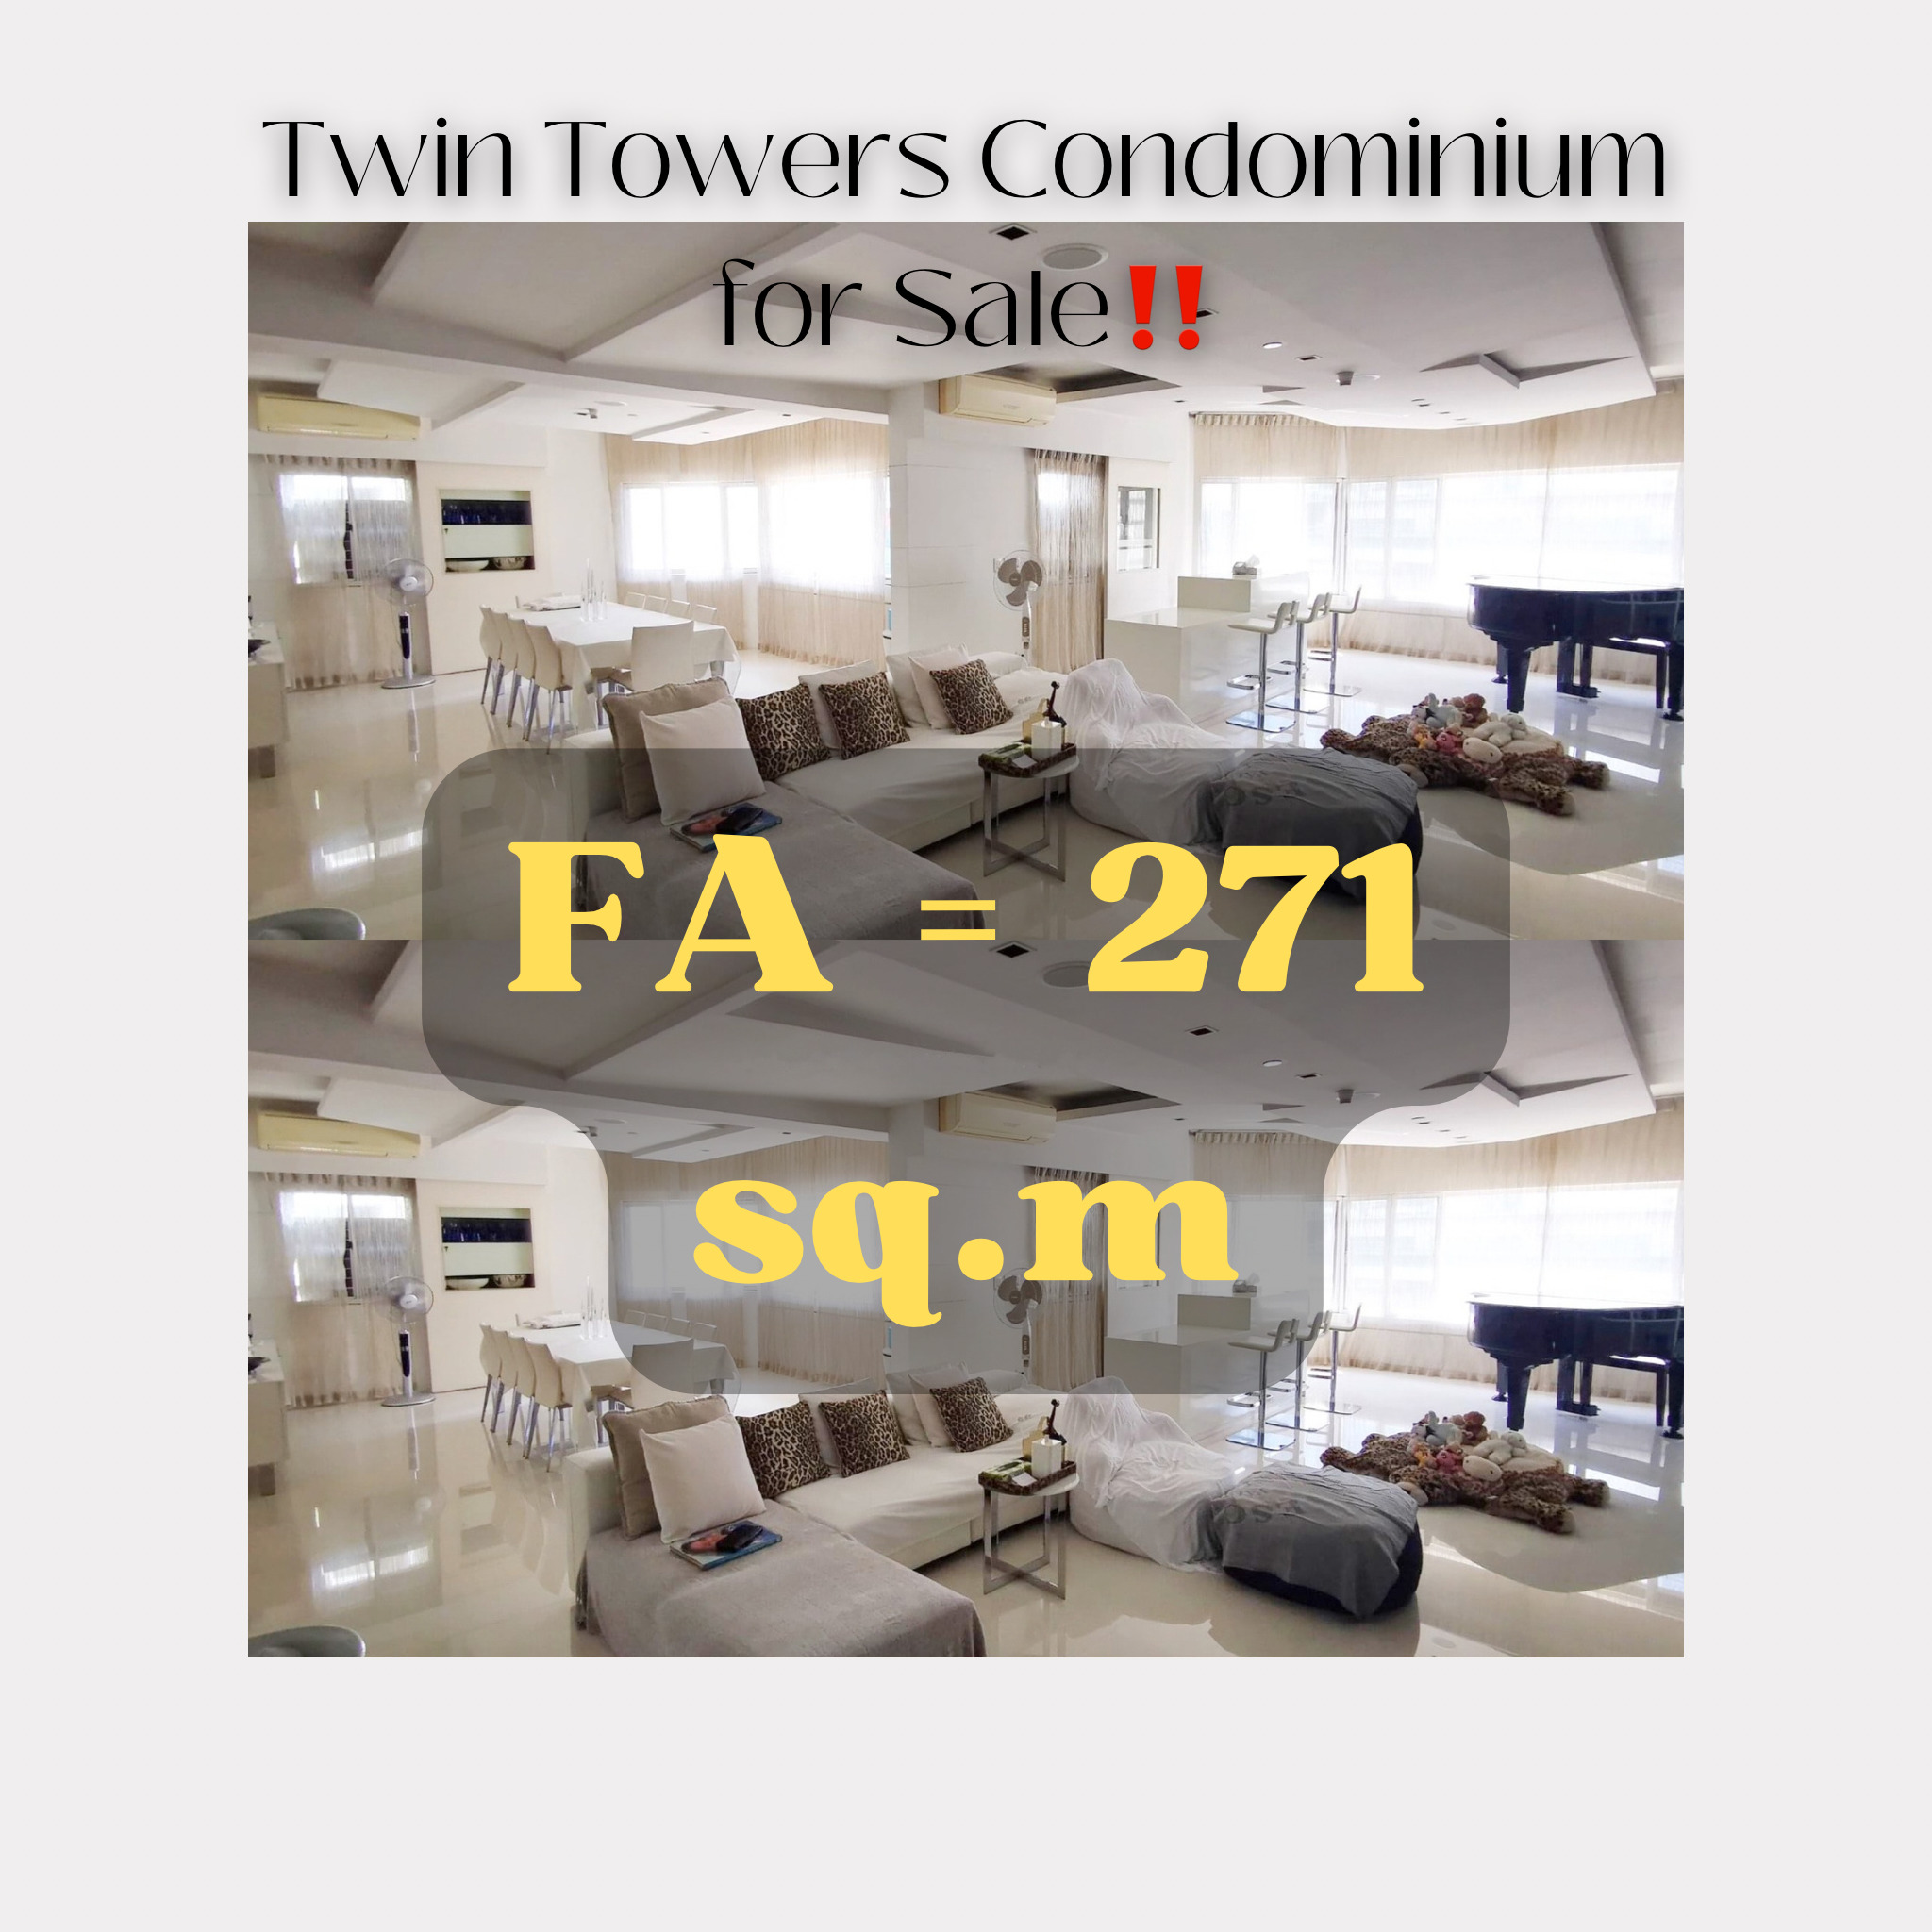 Twin Towers Condominium, Apartment Ridge for Sale‼️